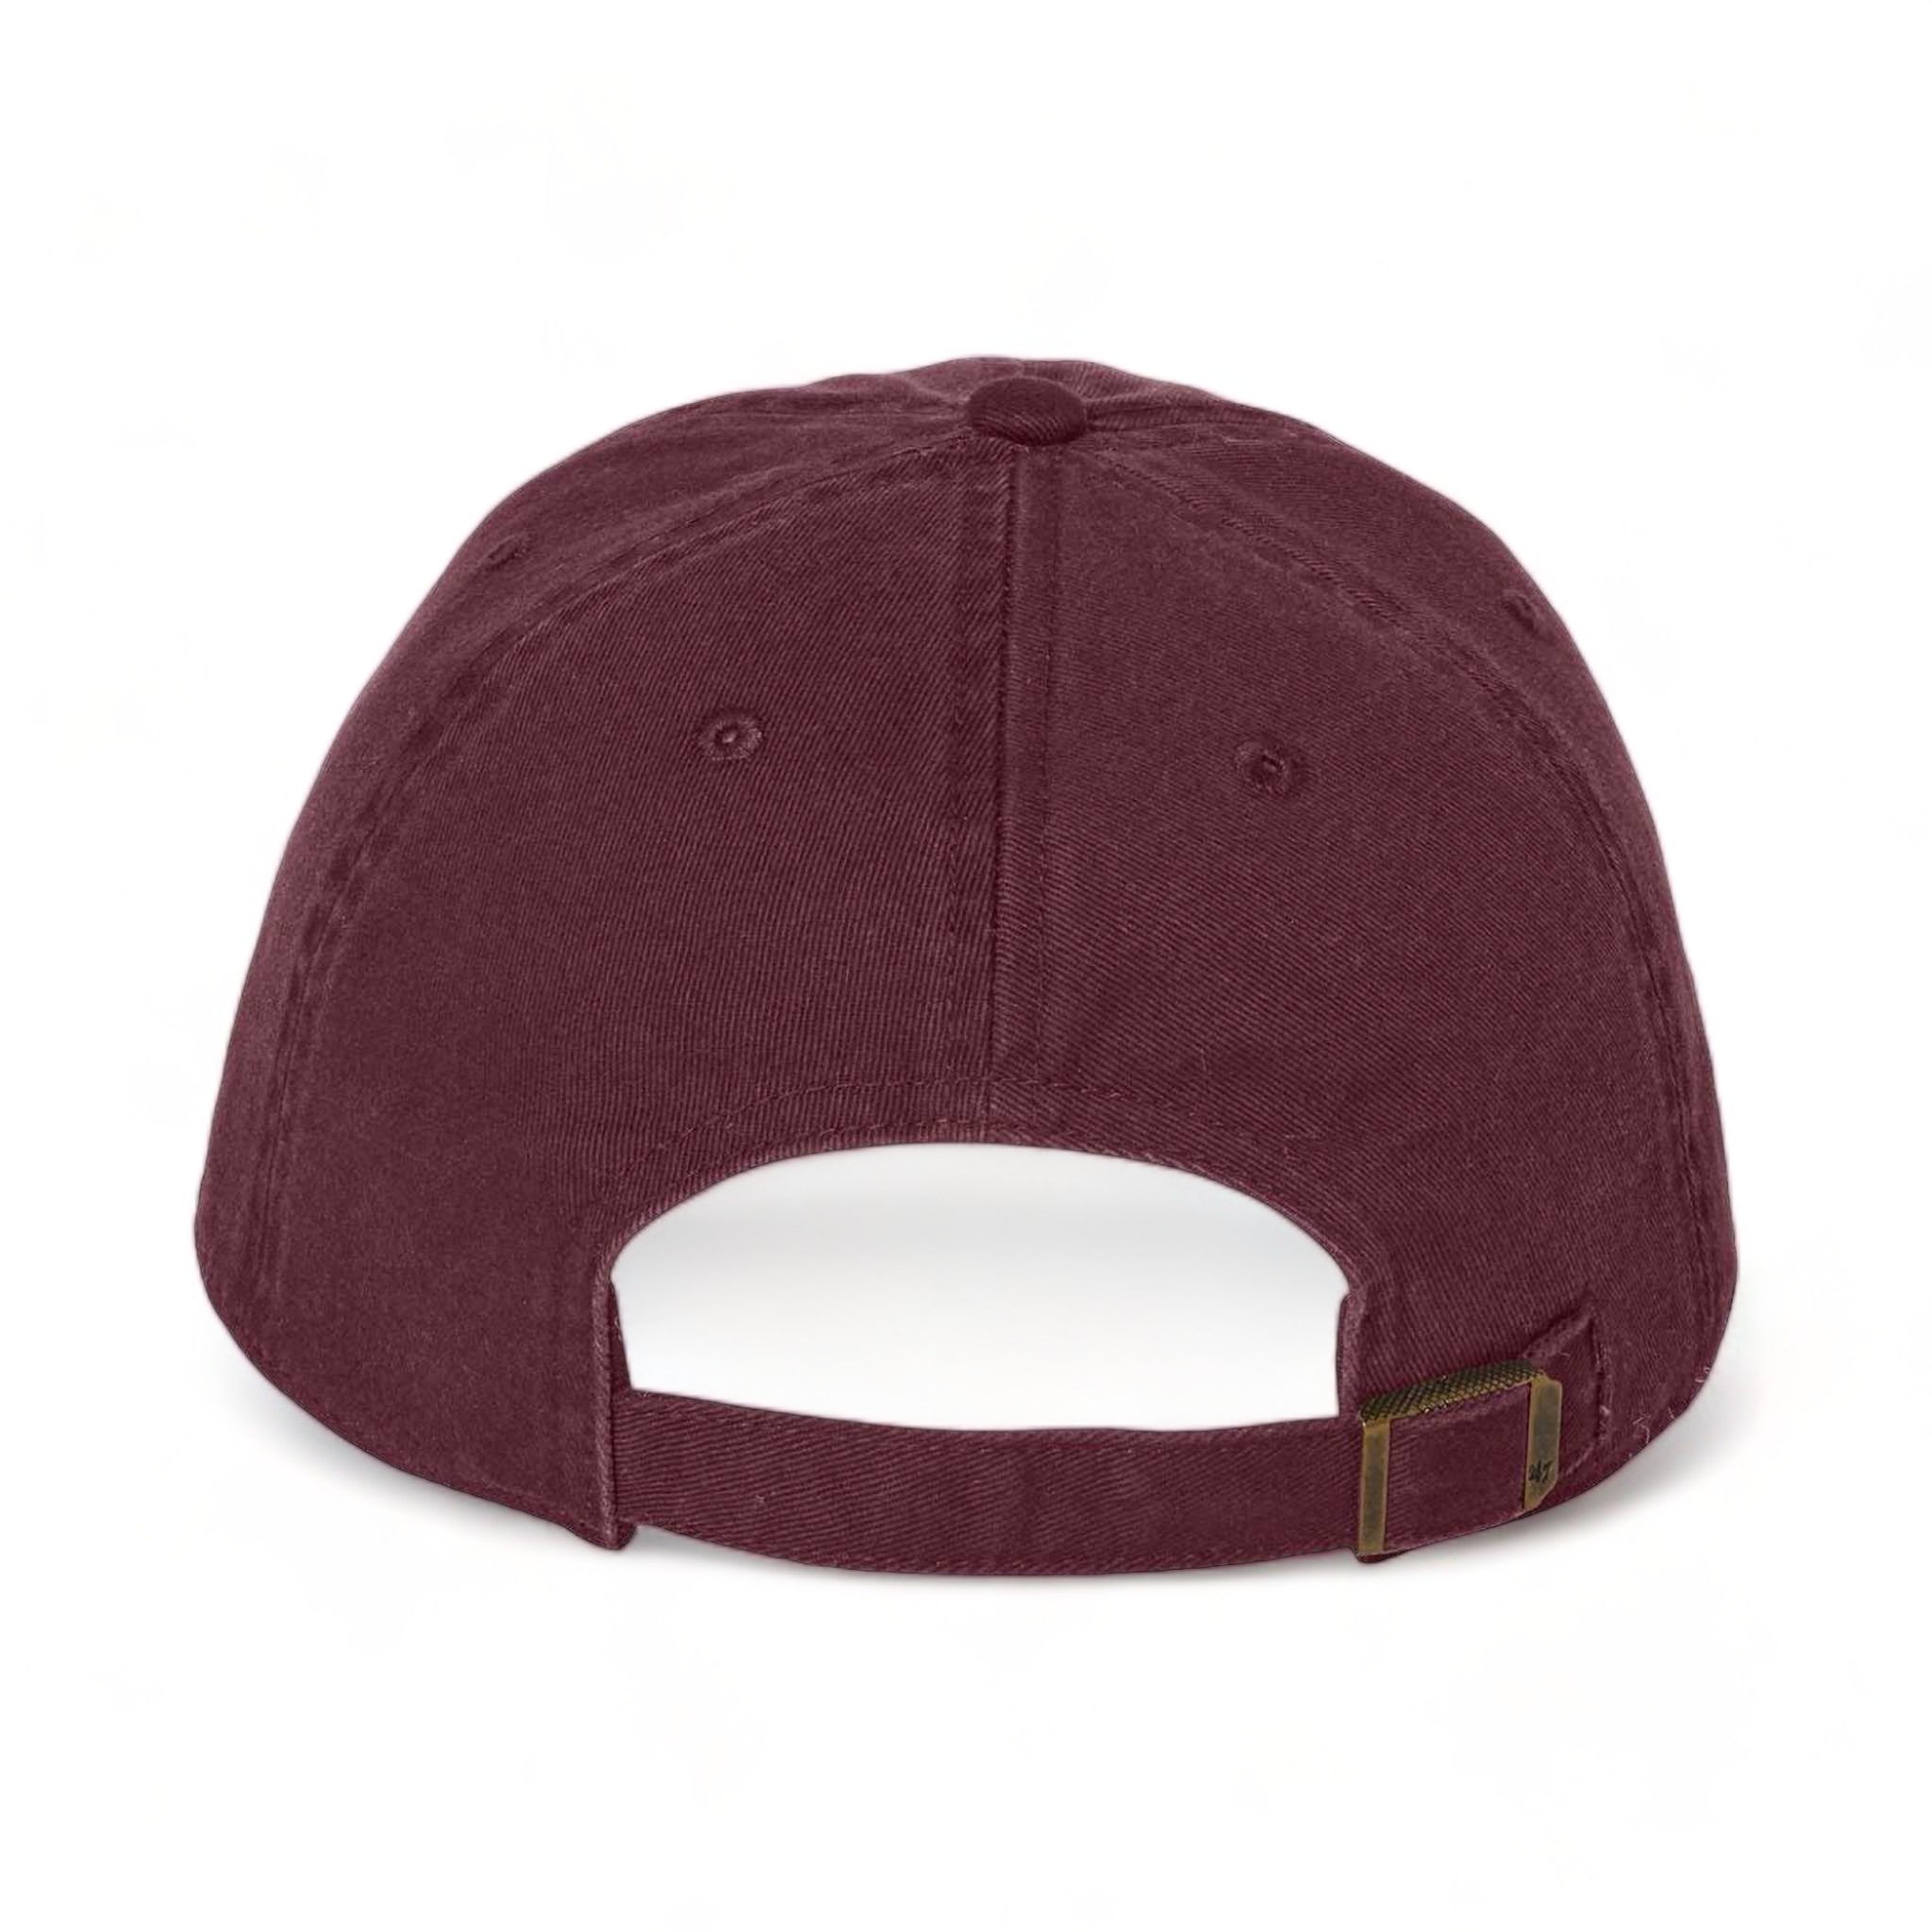 Back view of 47 Brand 4700 custom hat in dark maroon